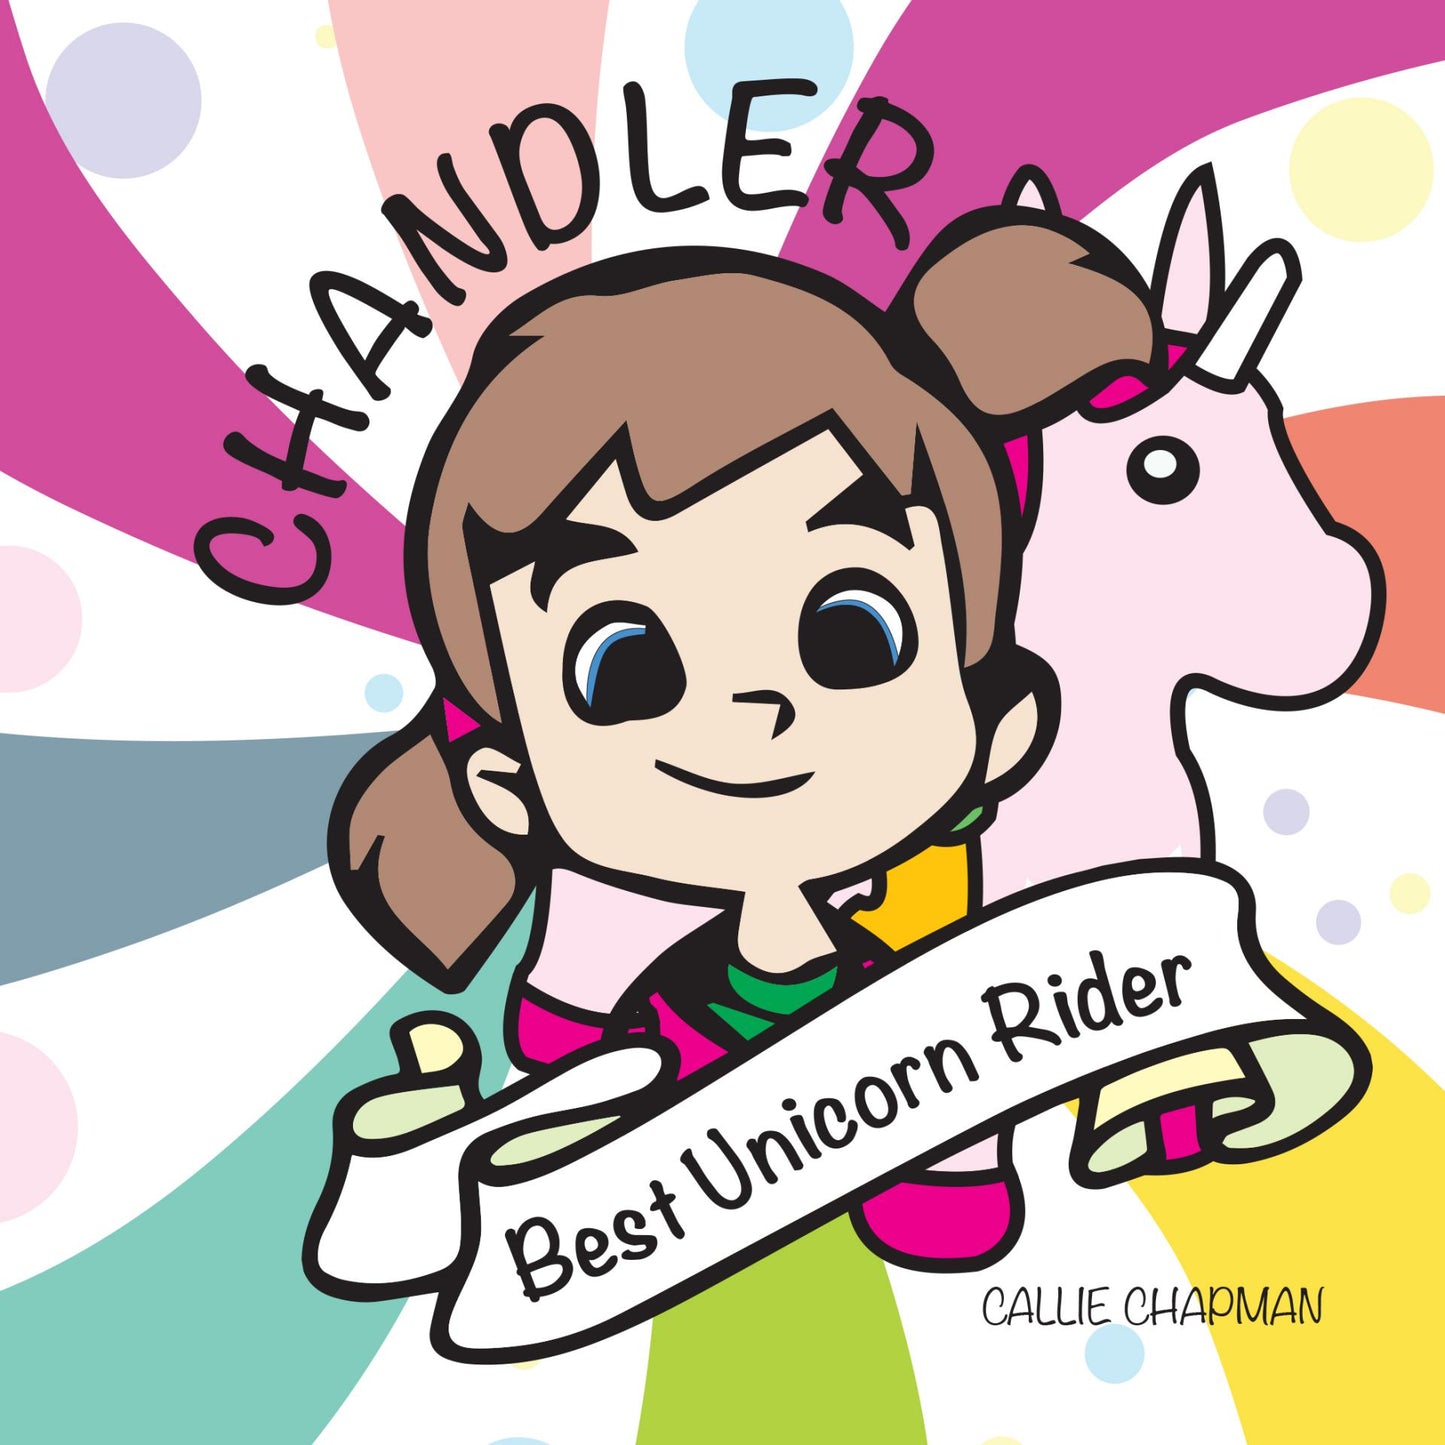 Chandler the Best Unicorn Rider